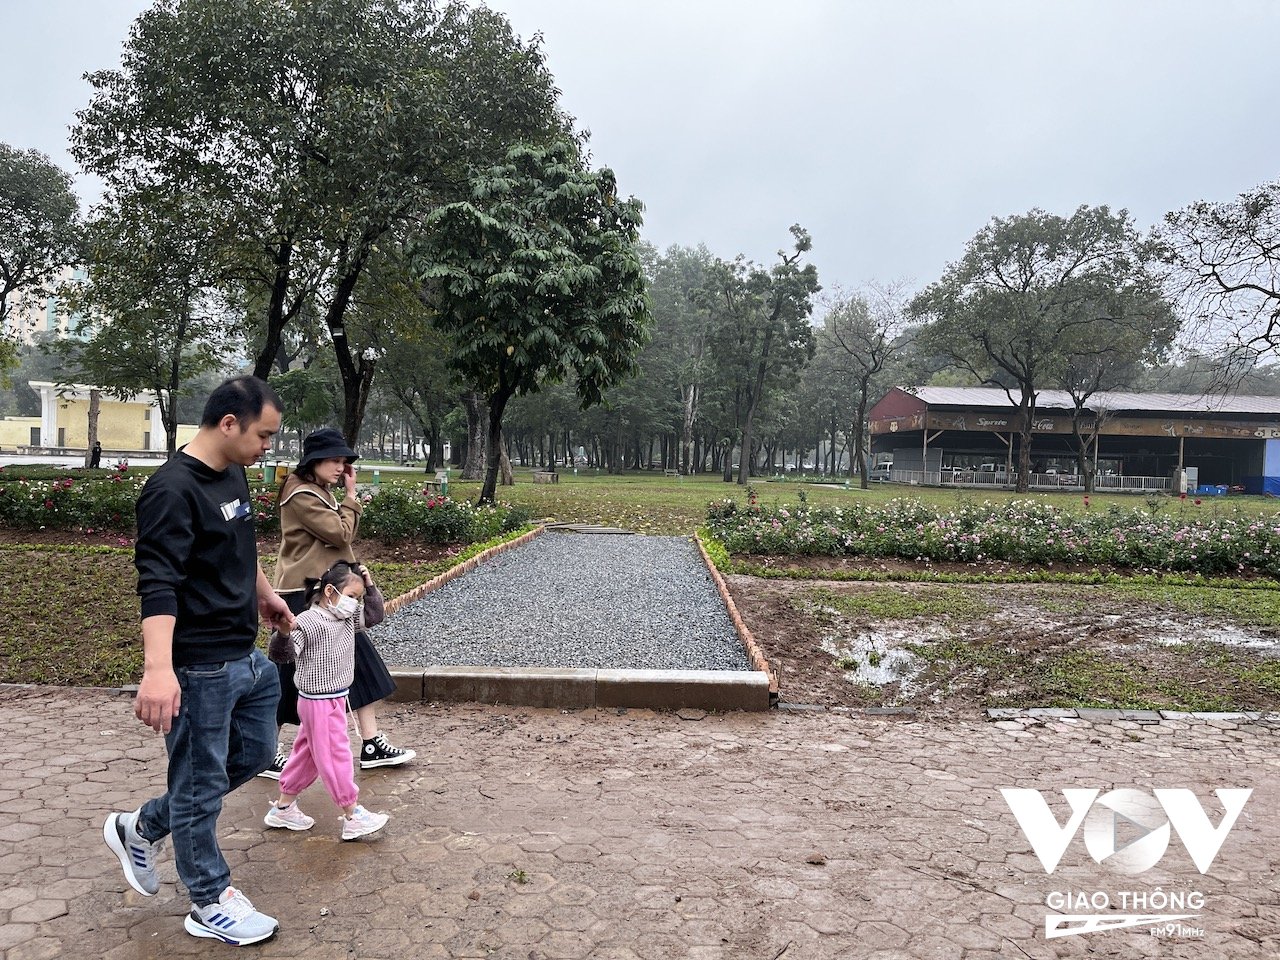 Quyết định dỡ bỏ hàng rào công viên của thành phố Hà Nội nhận được sự hưởng ứng tích cực từ phía người dân Thủ đô...